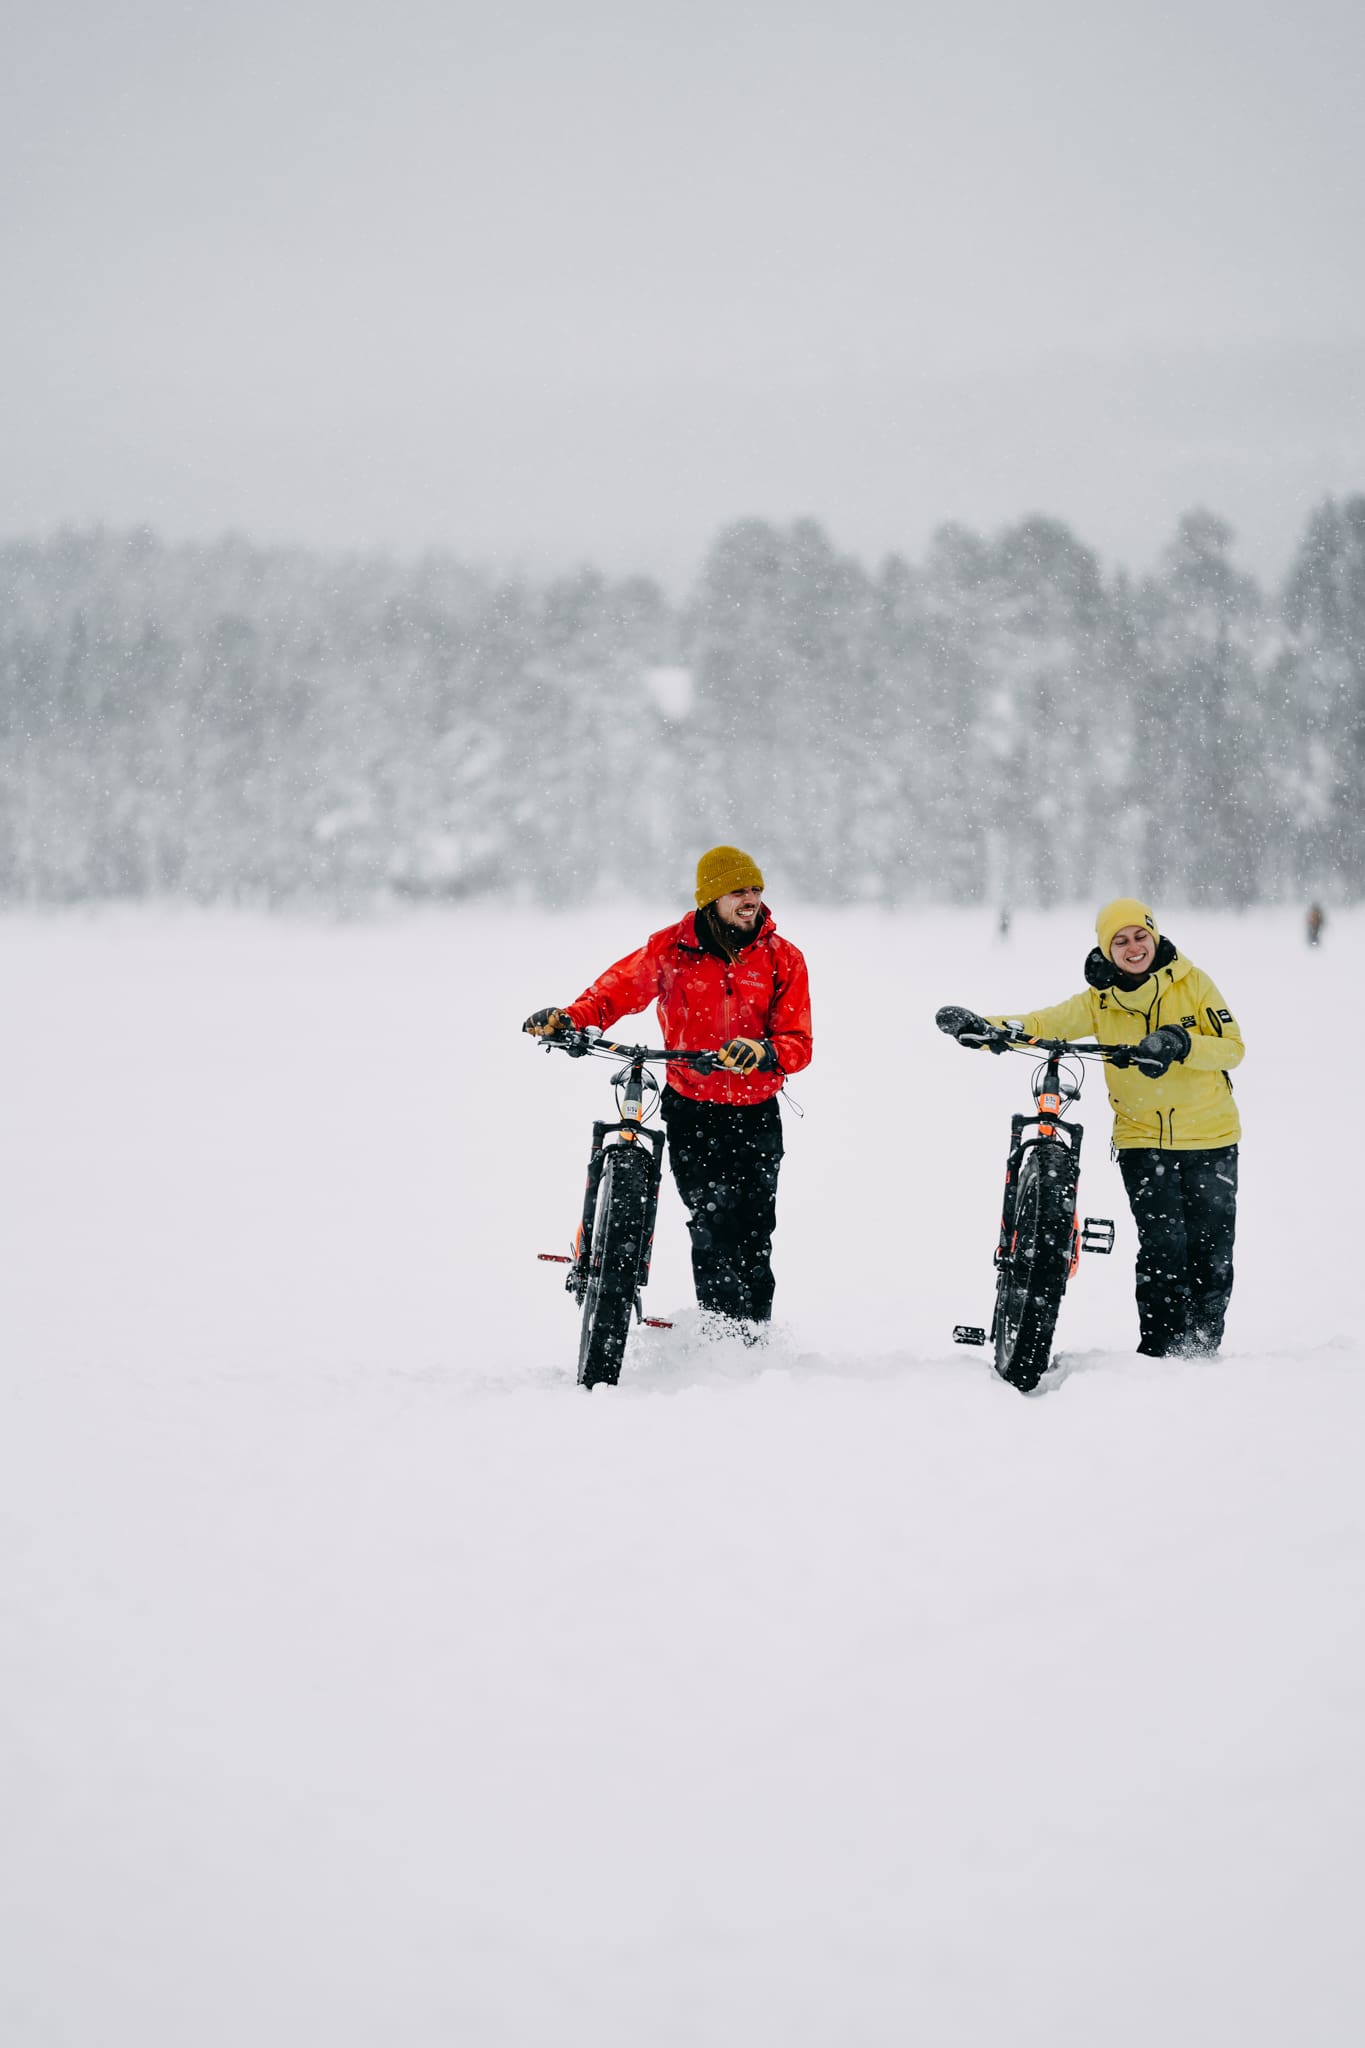 4x Lapse activiteiten voor wintersporters